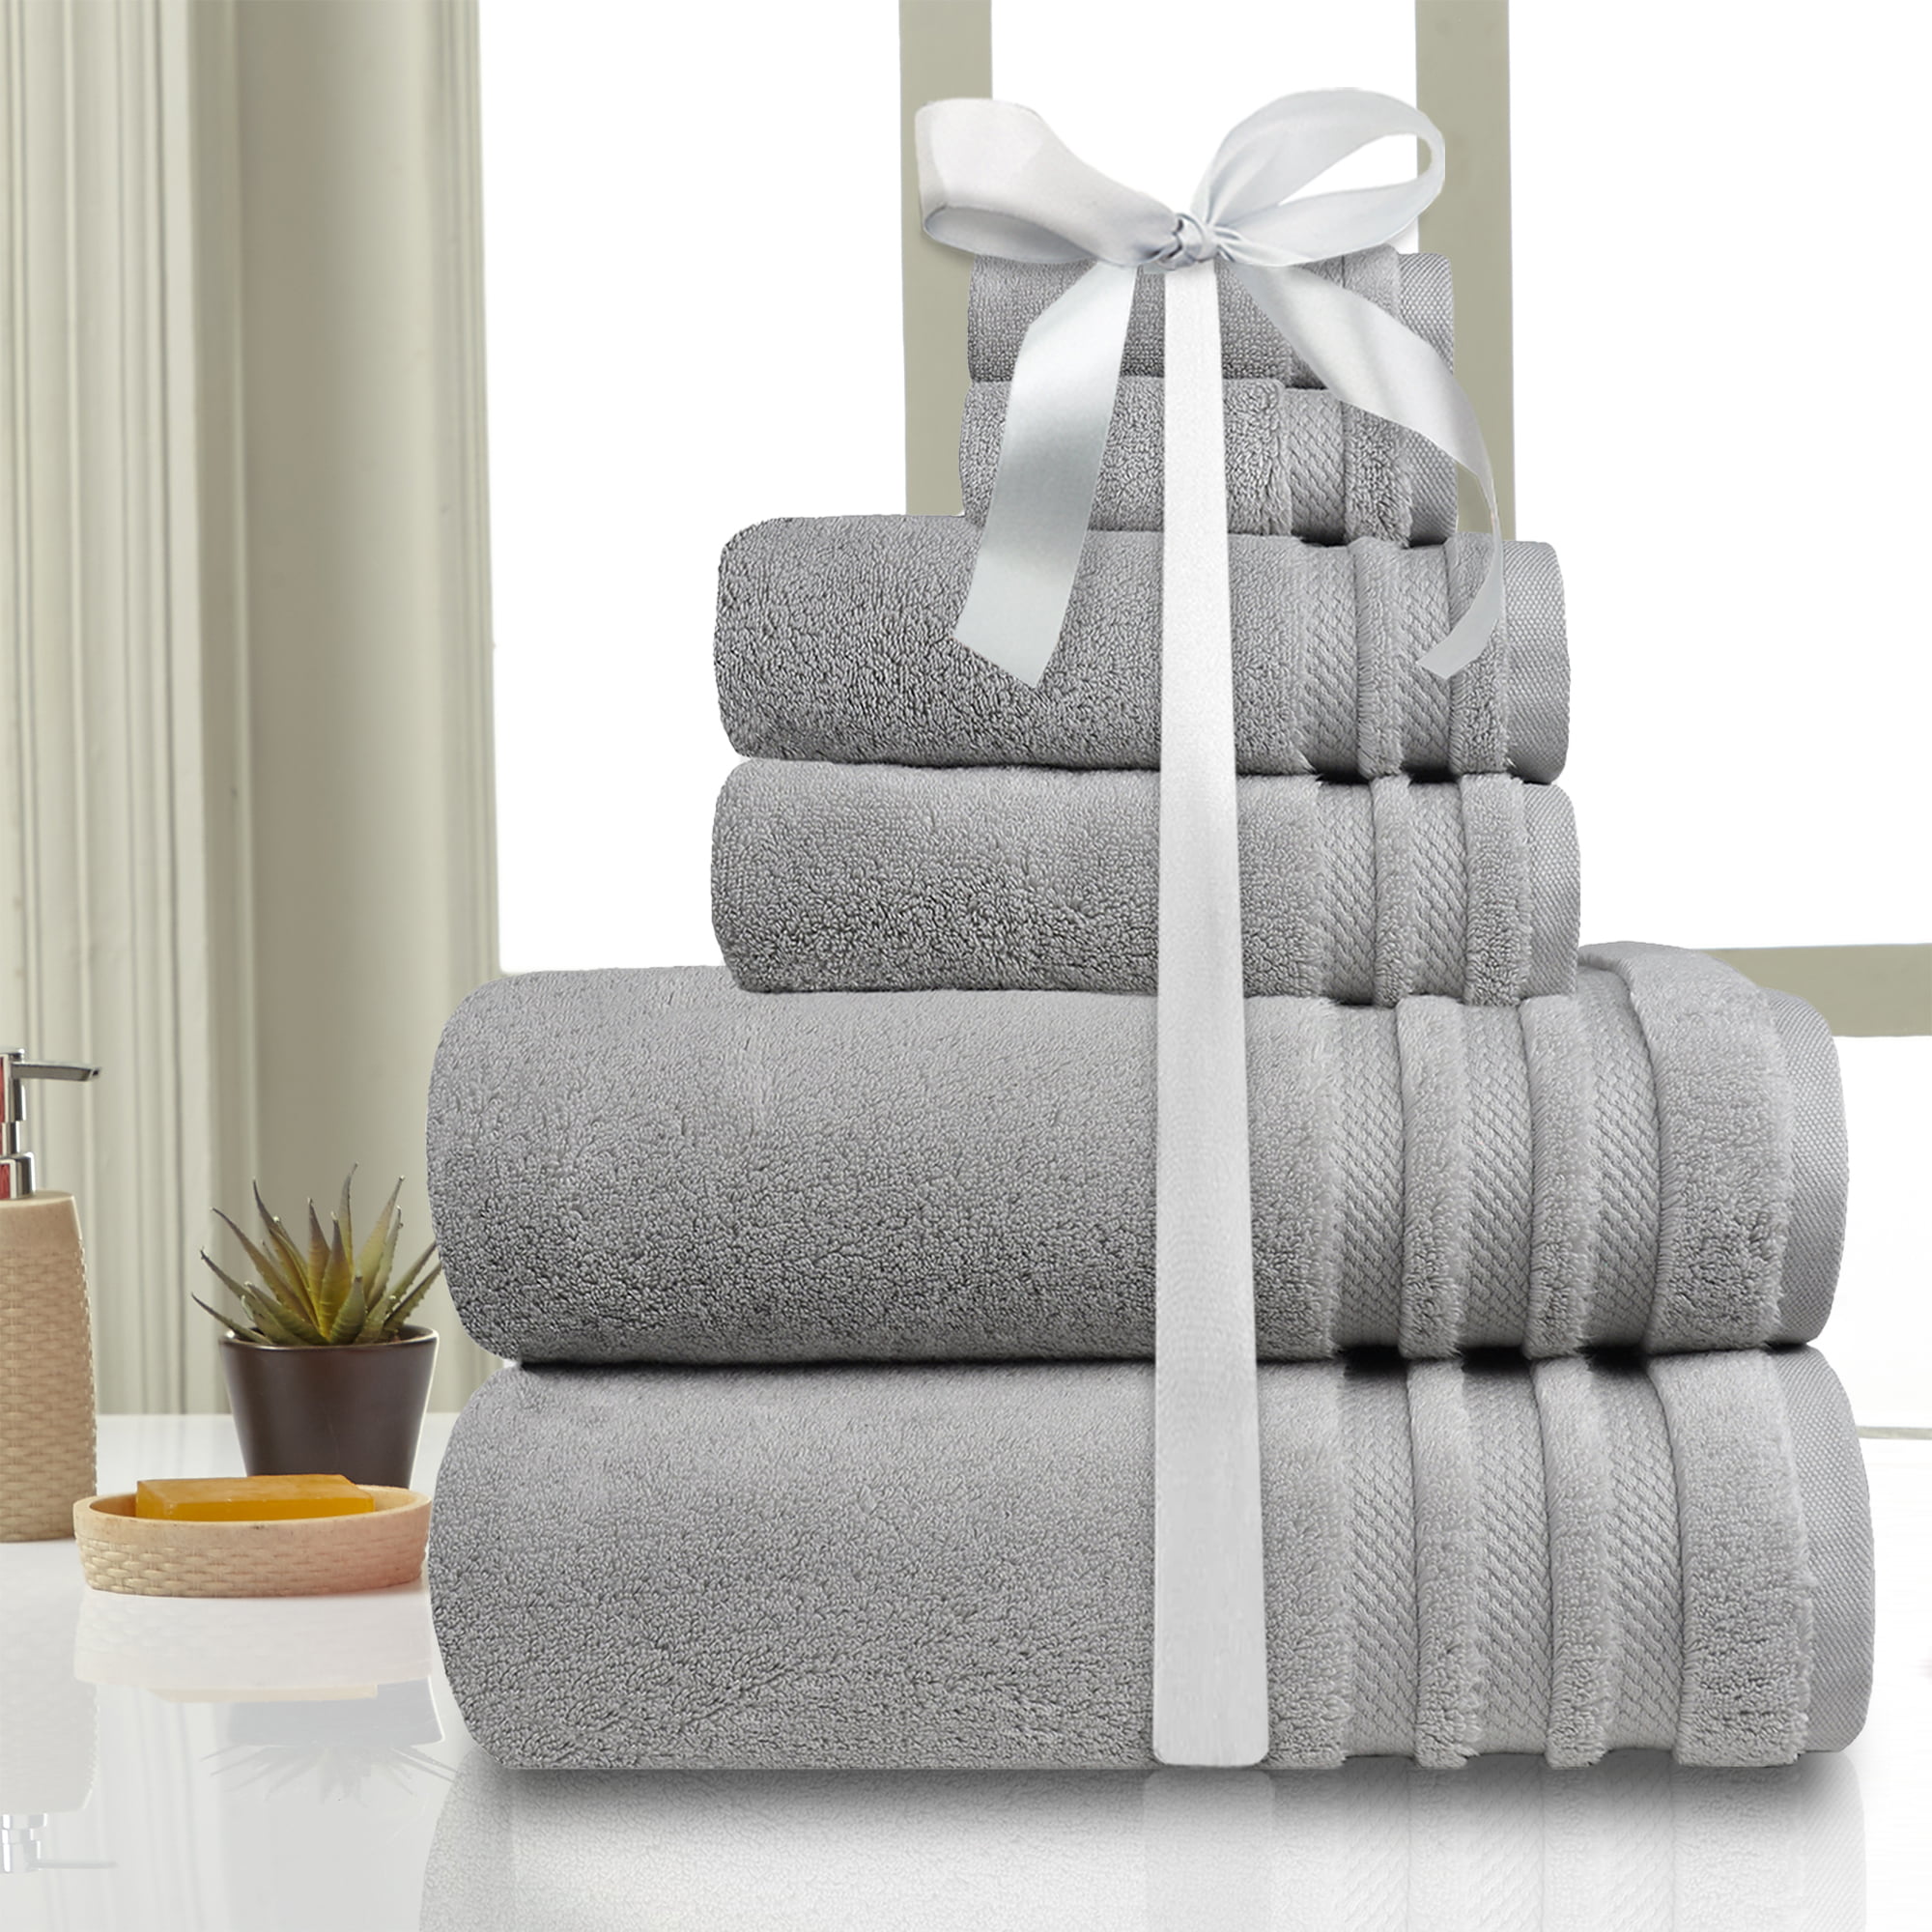 5 PCS TOWEL BALE SET 100% COTTON SOFT FACE HAND BATH BATHROOM TOWELS yangde4